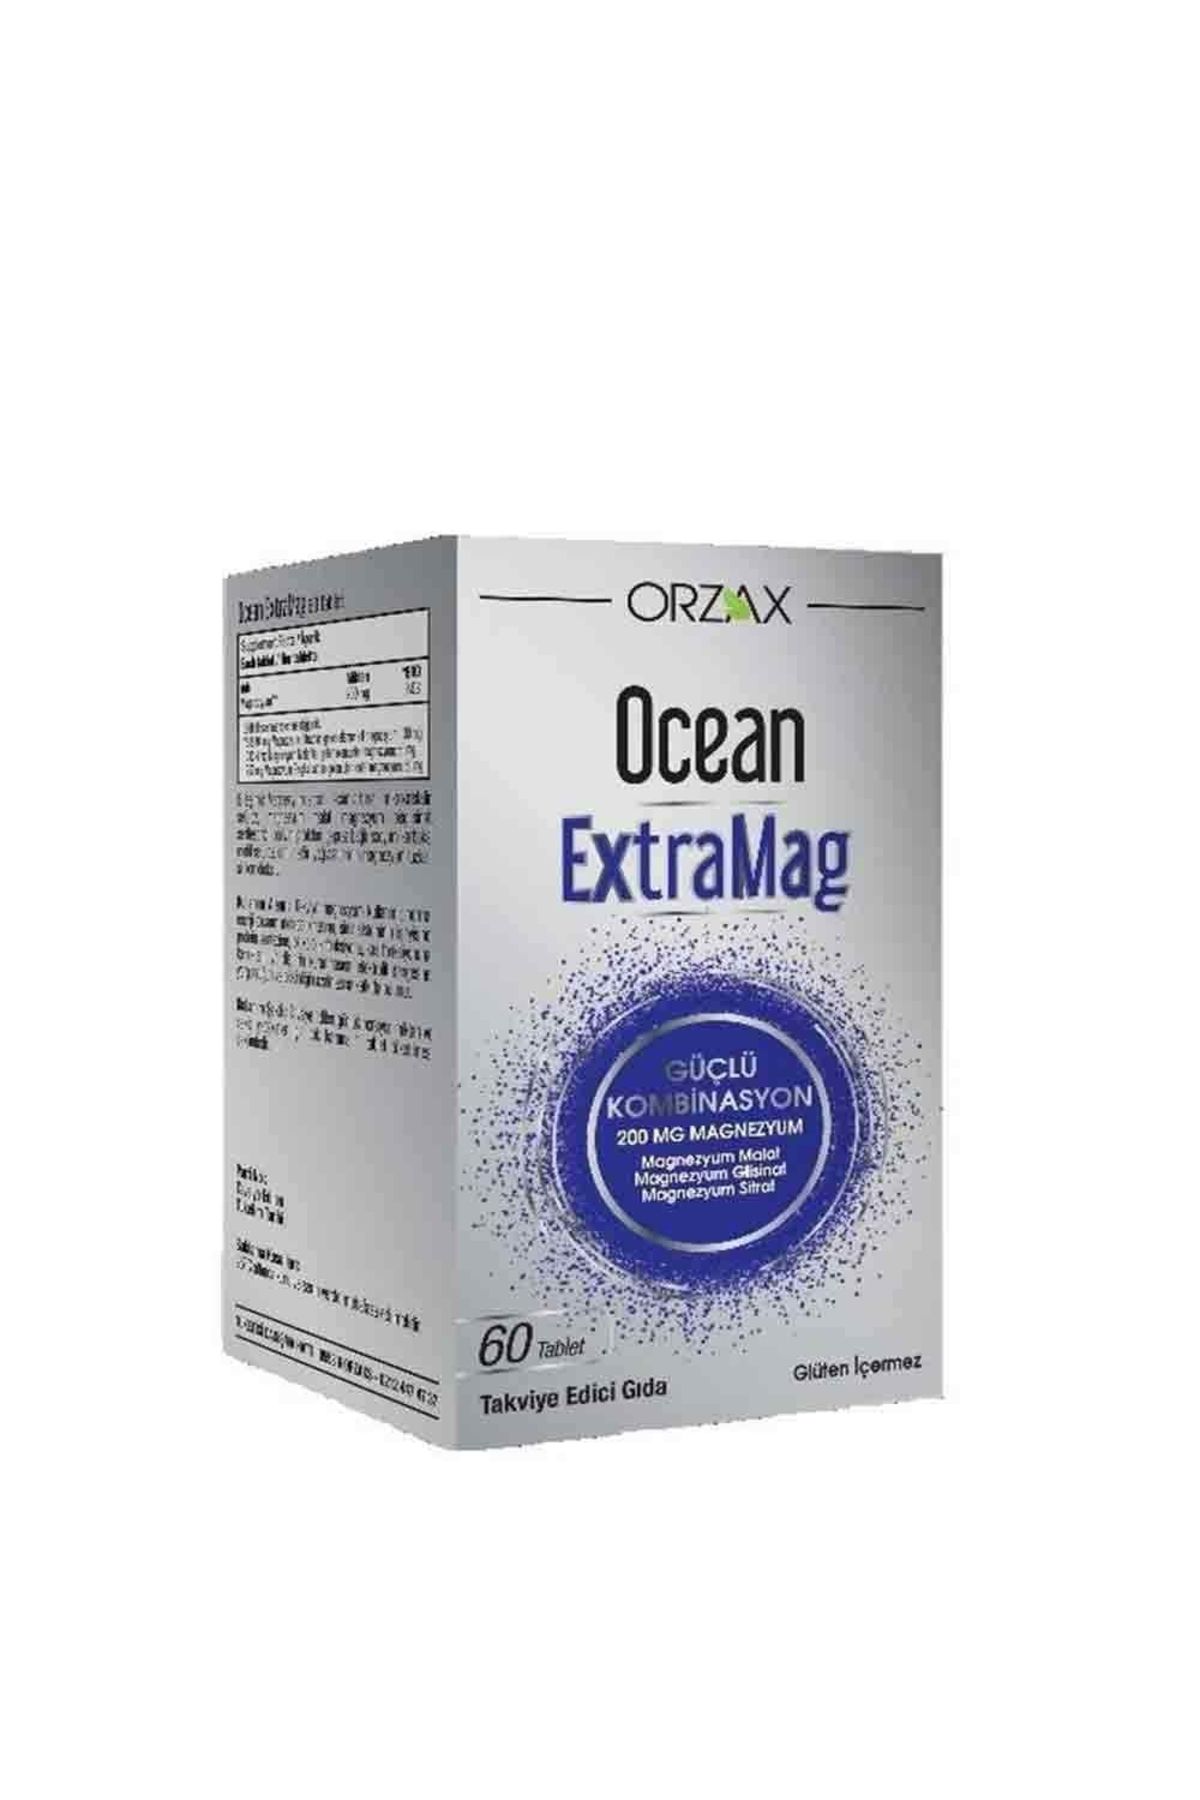 Ocean ExtraMag 60 Tablet Magnezyum İçeren Takviye Edici Gıda